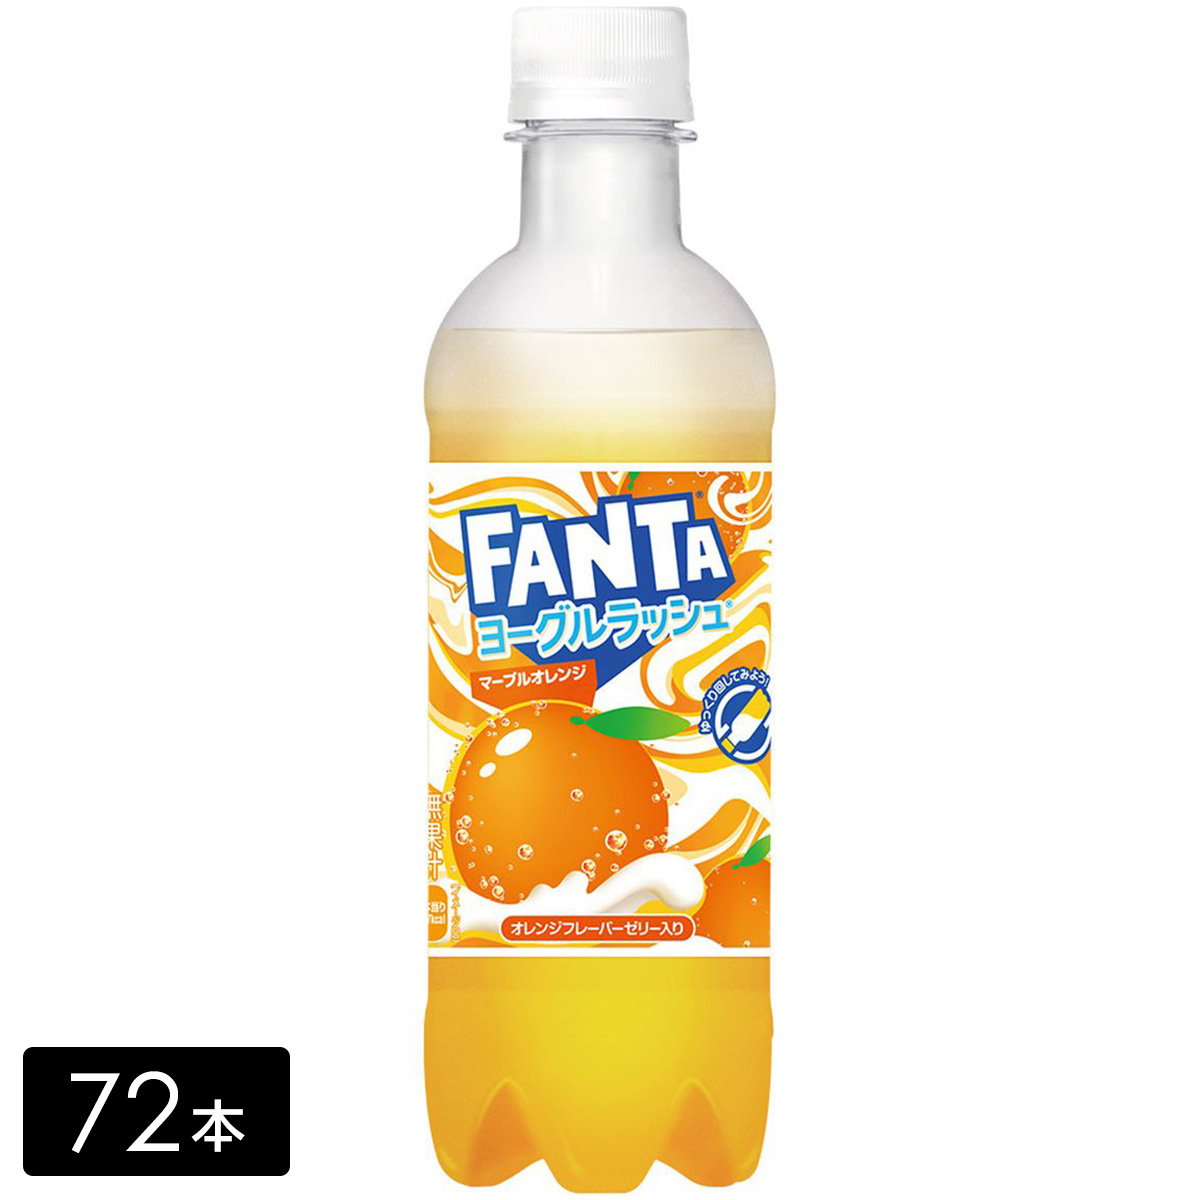 ファンタ ヨーグルラッシュ マーブルオレンジ 380ml×72本(24本×3箱)